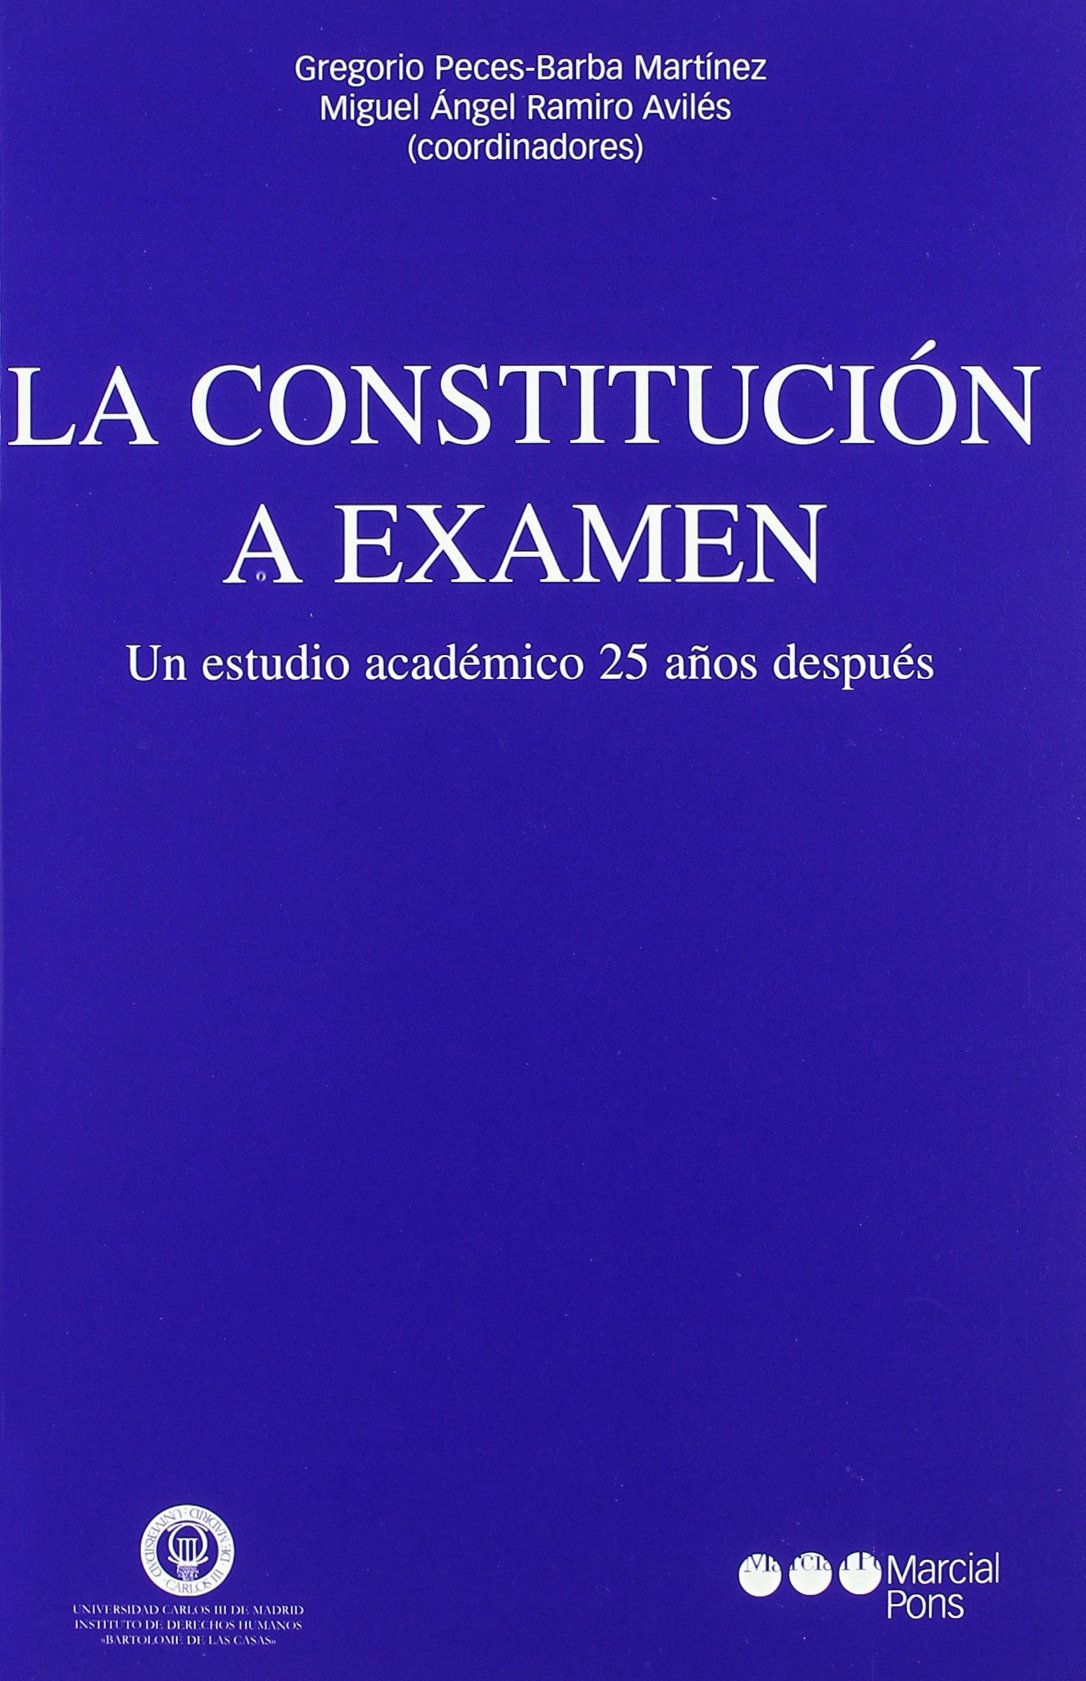 La Constitución a examen